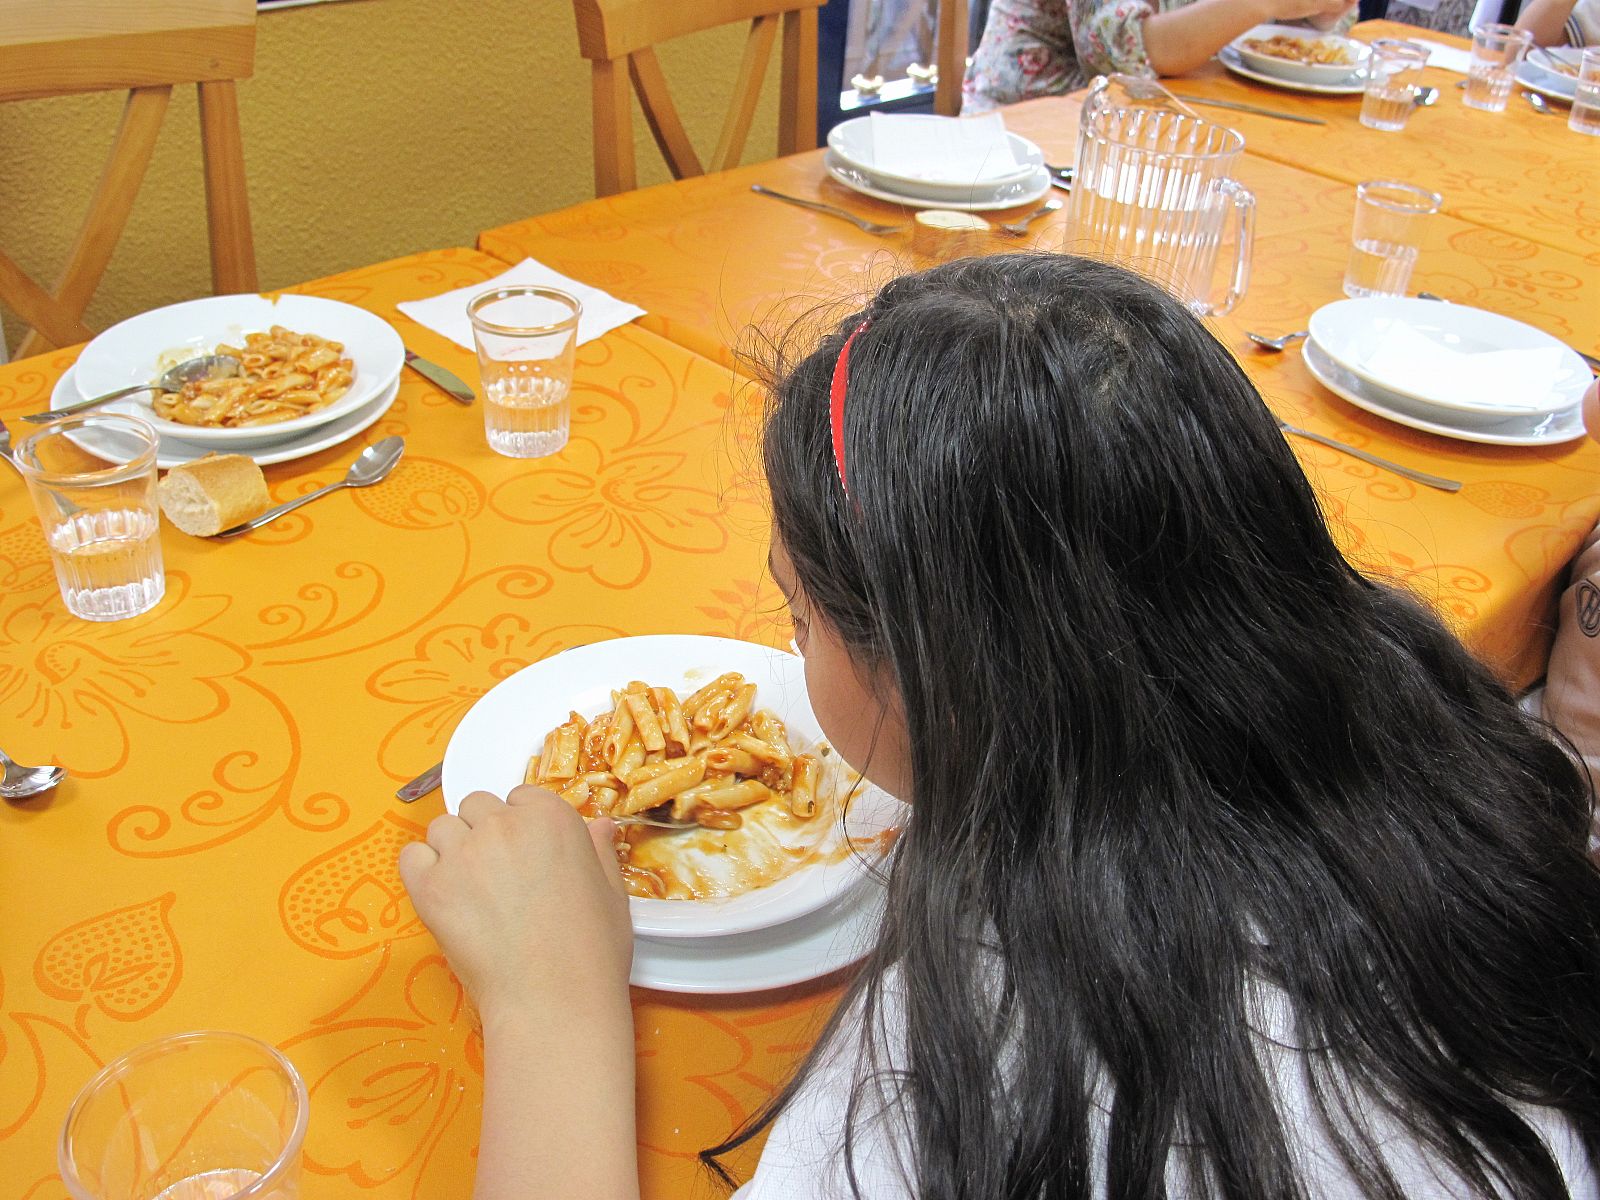 Un centenar de niños acude a cenar cada día a esta comedor social de Embajadores.